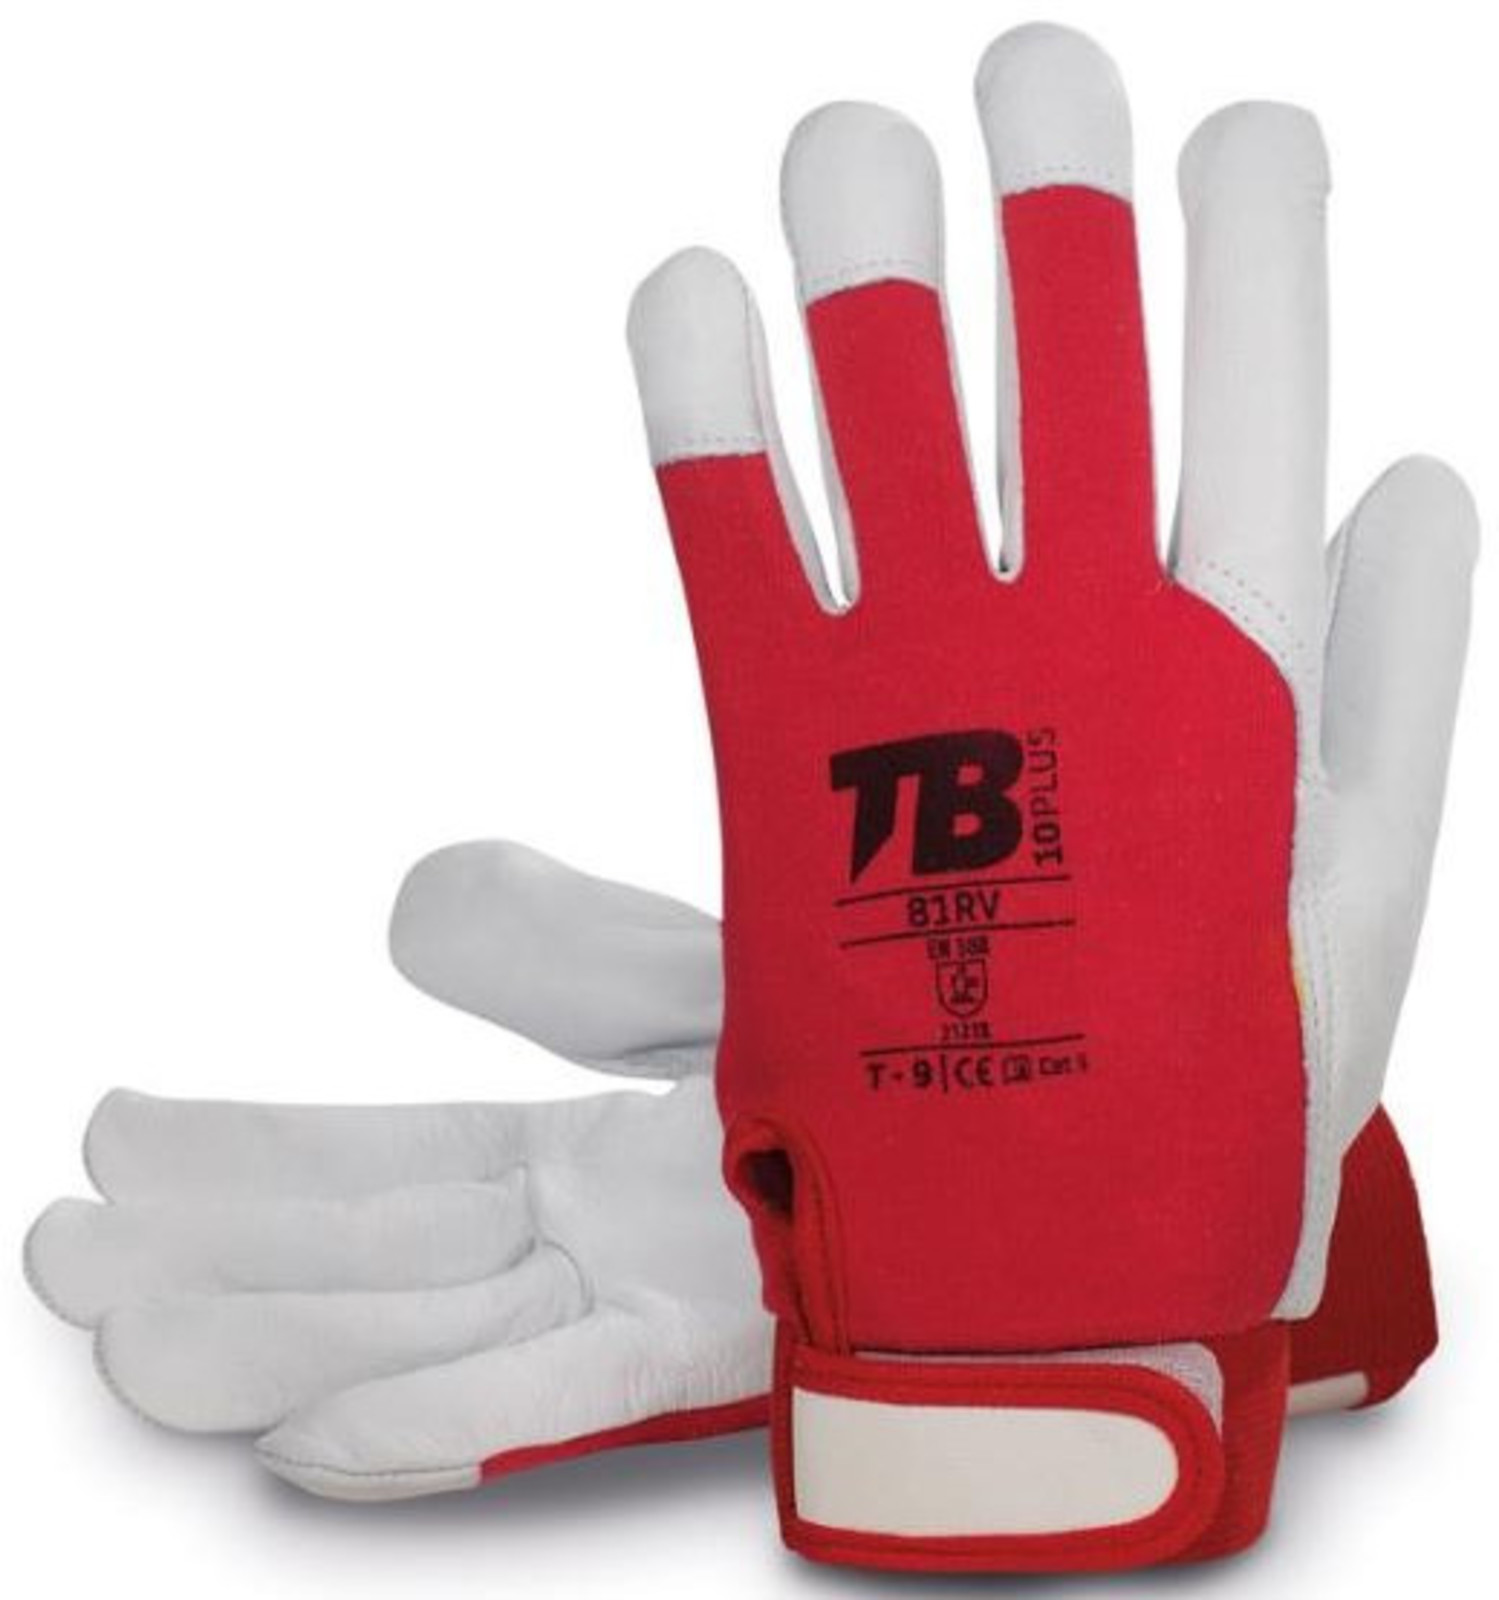 Pracovné rukavice TB 81RV kombinované - veľkosť: 7/S